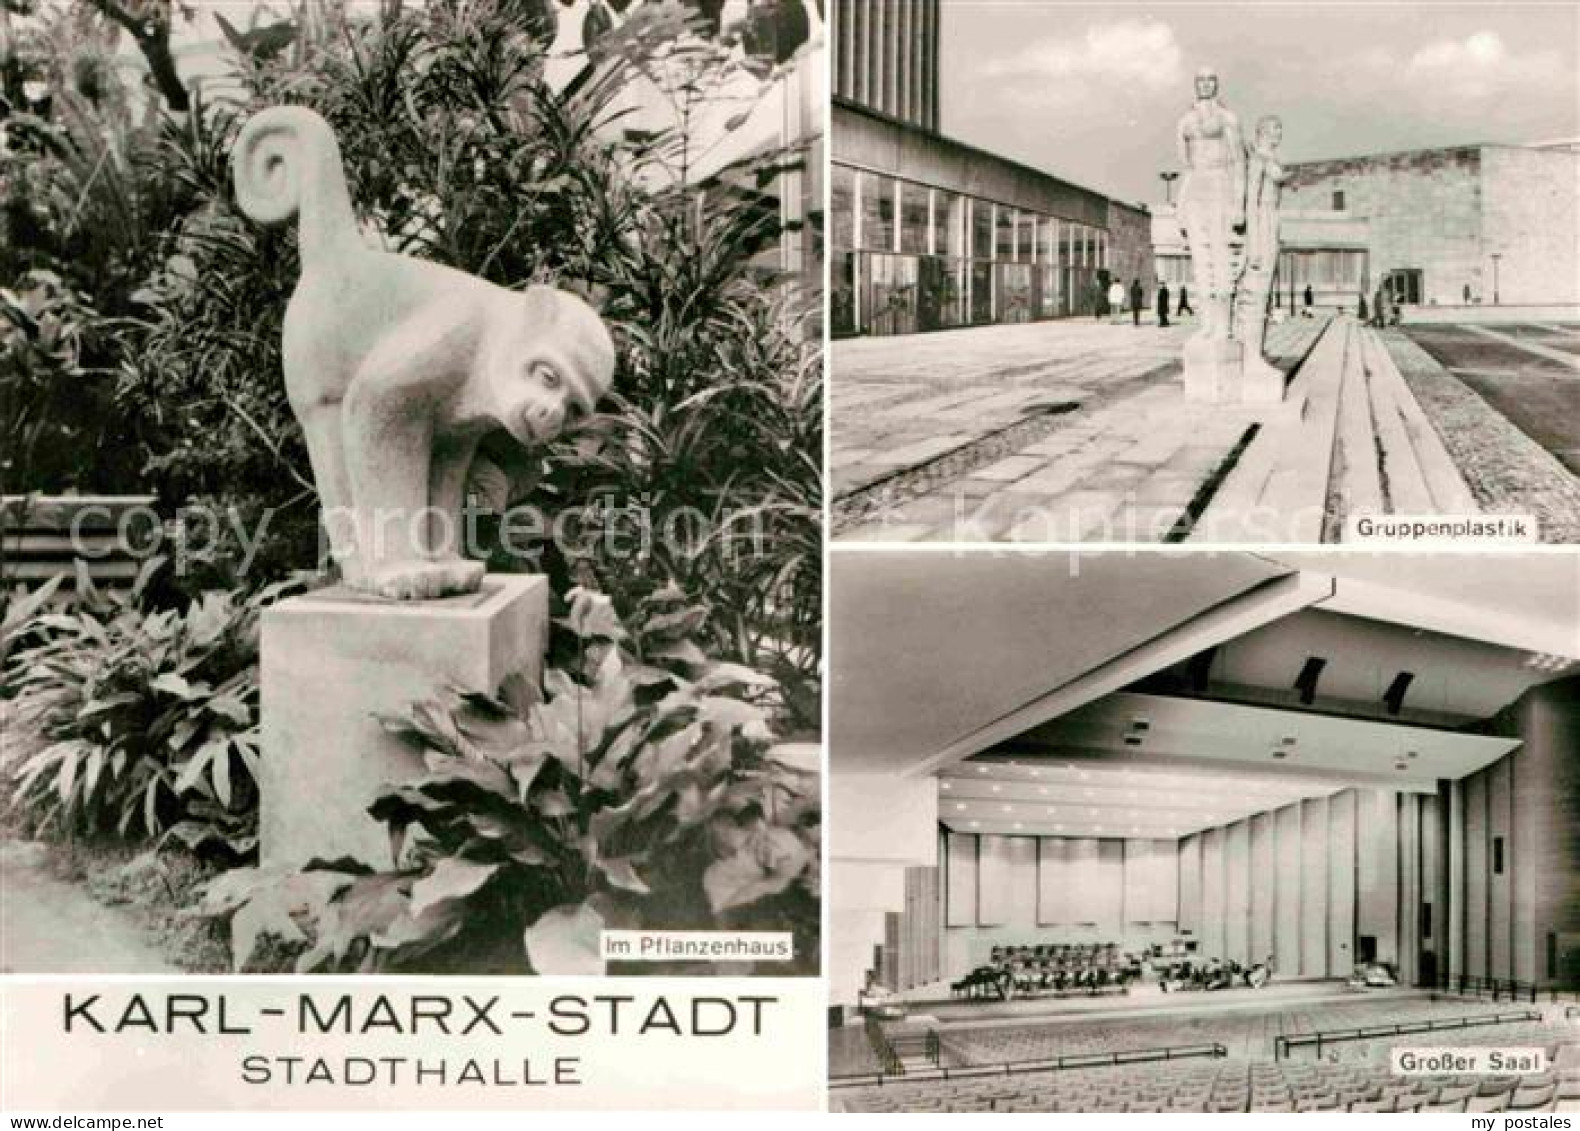 72728003 Karl-Marx-Stadt Stadthalle Affenskulptur Pflanzenhaus Gruppenplastik Gr - Chemnitz